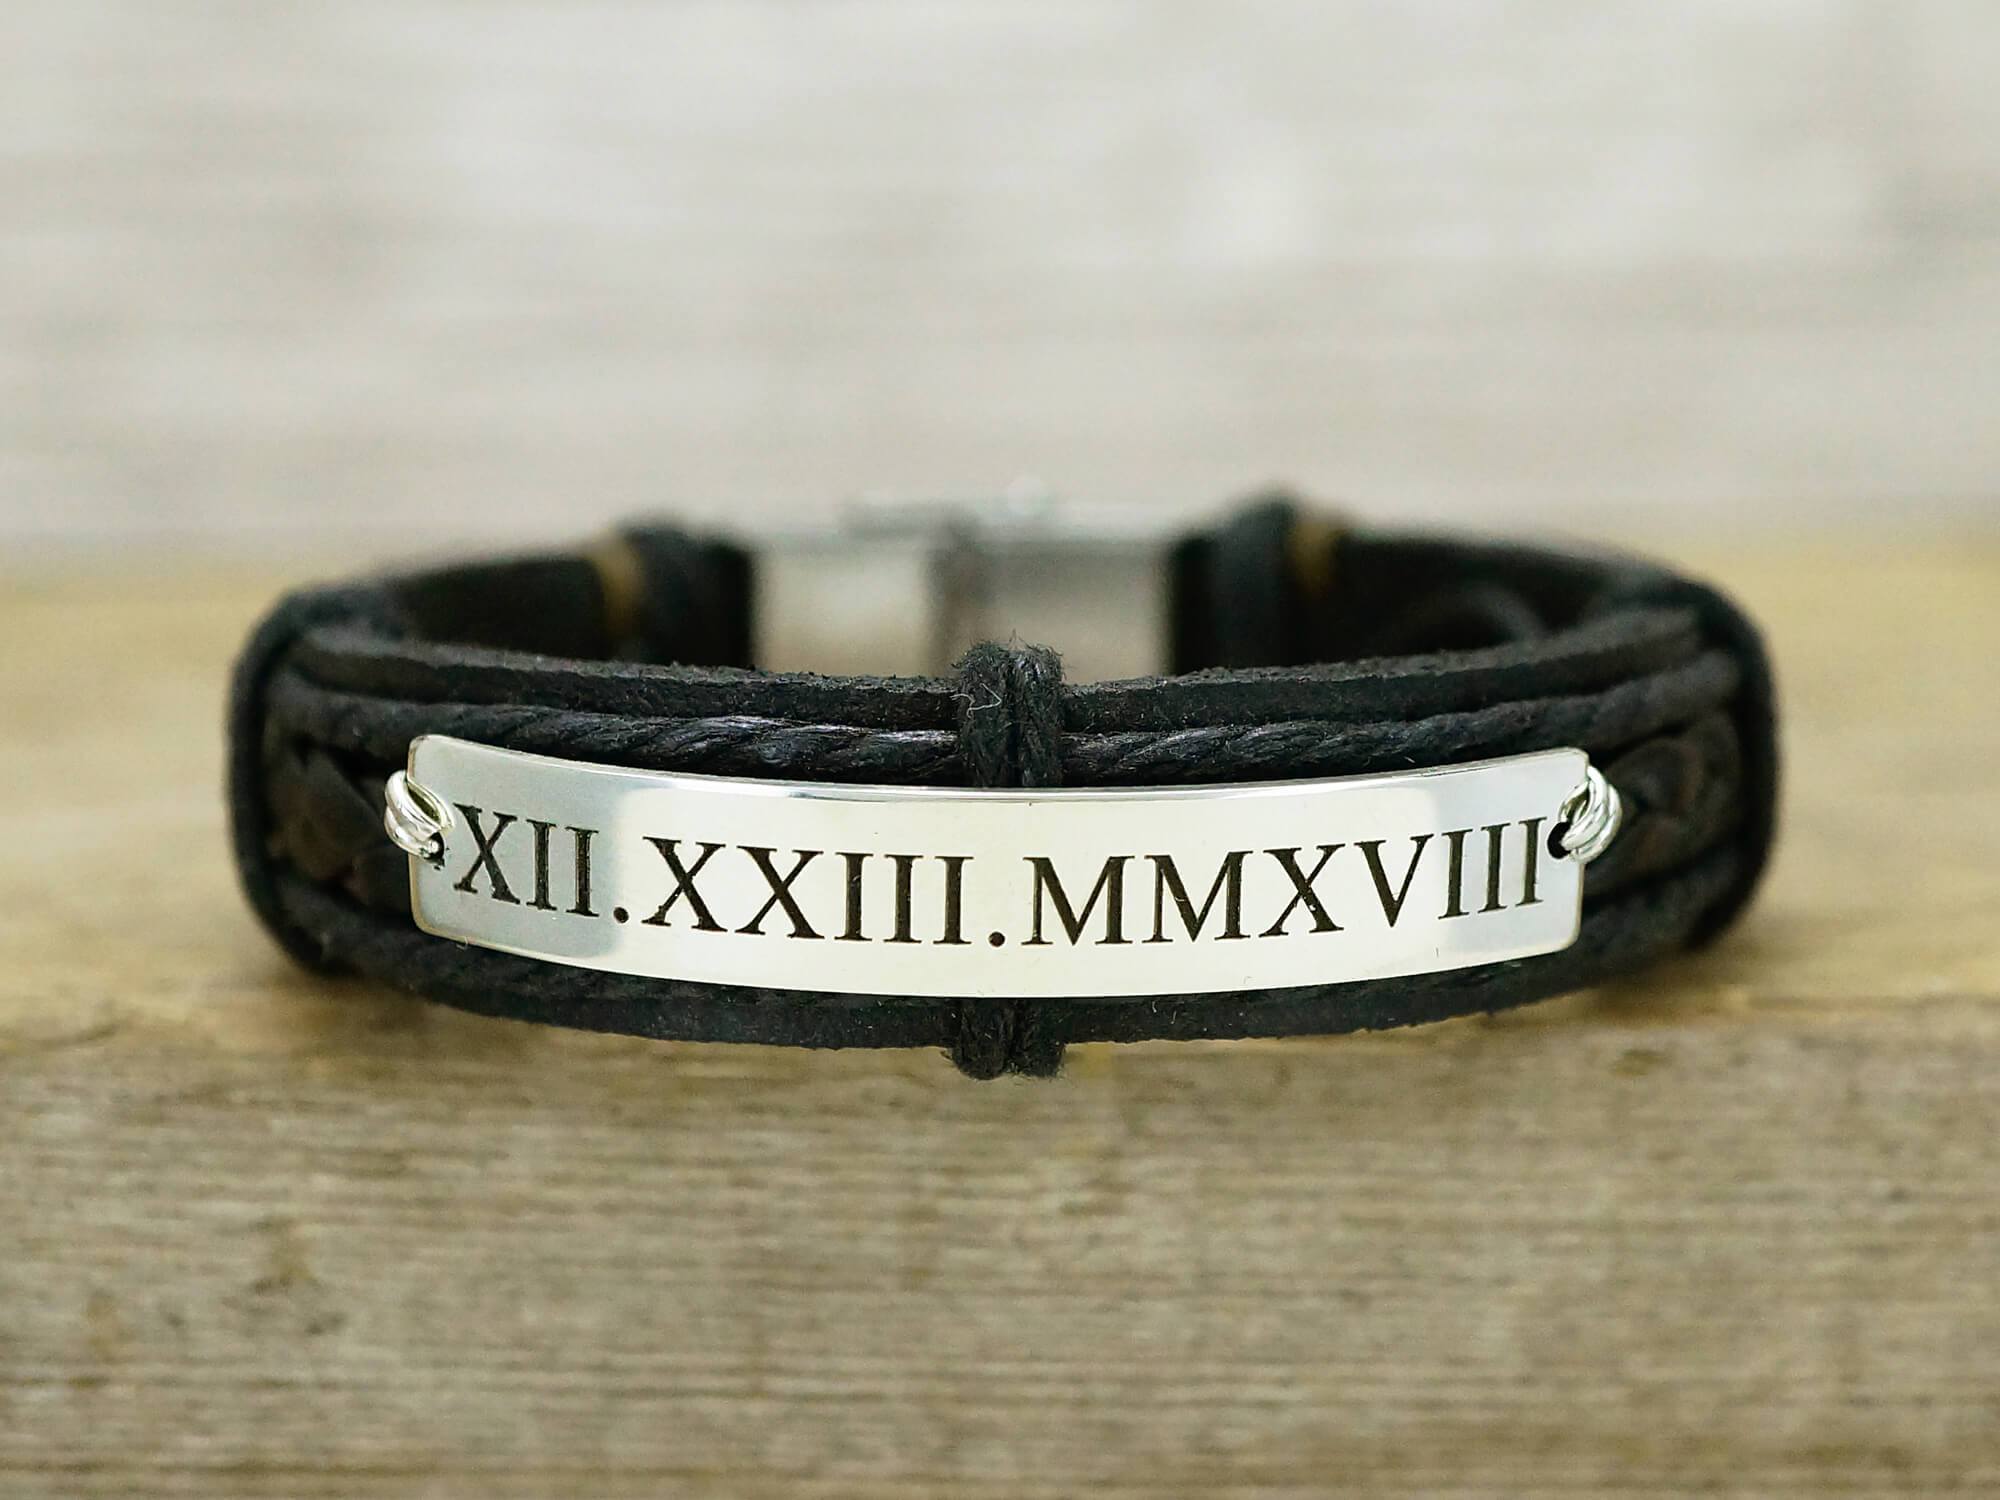 The Roman Numeral Bracelet